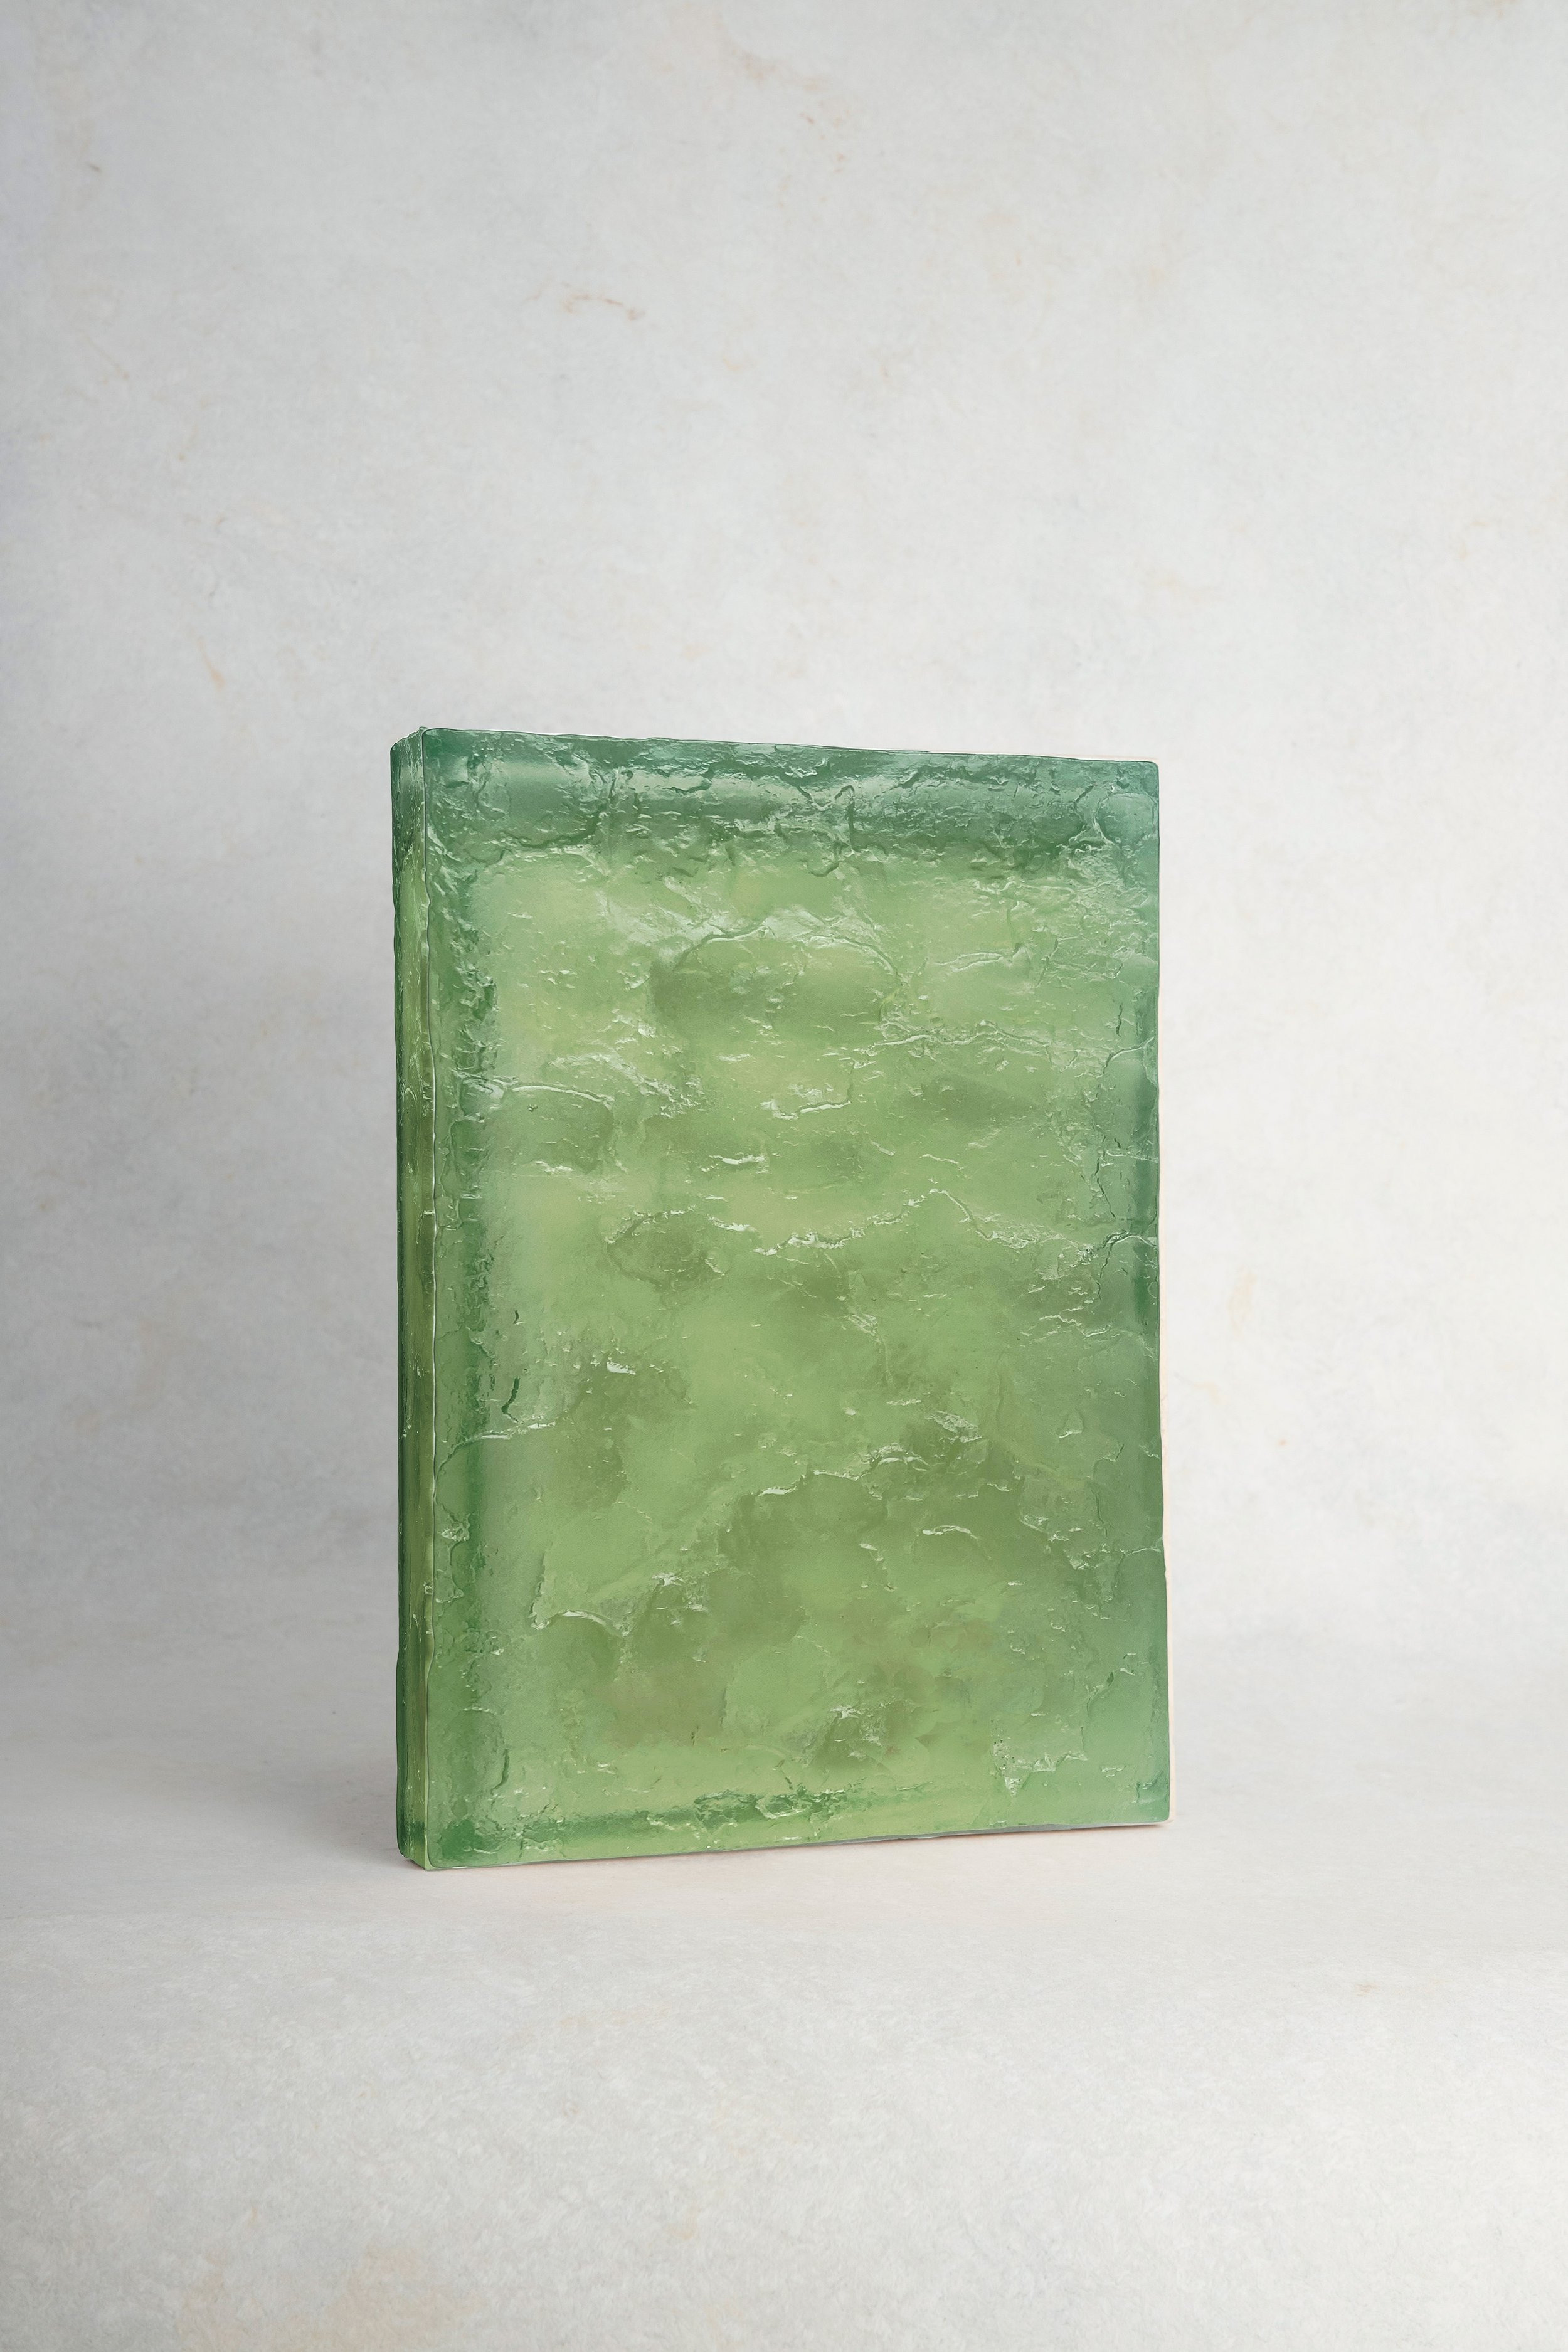  Vert clair (45) / light green  